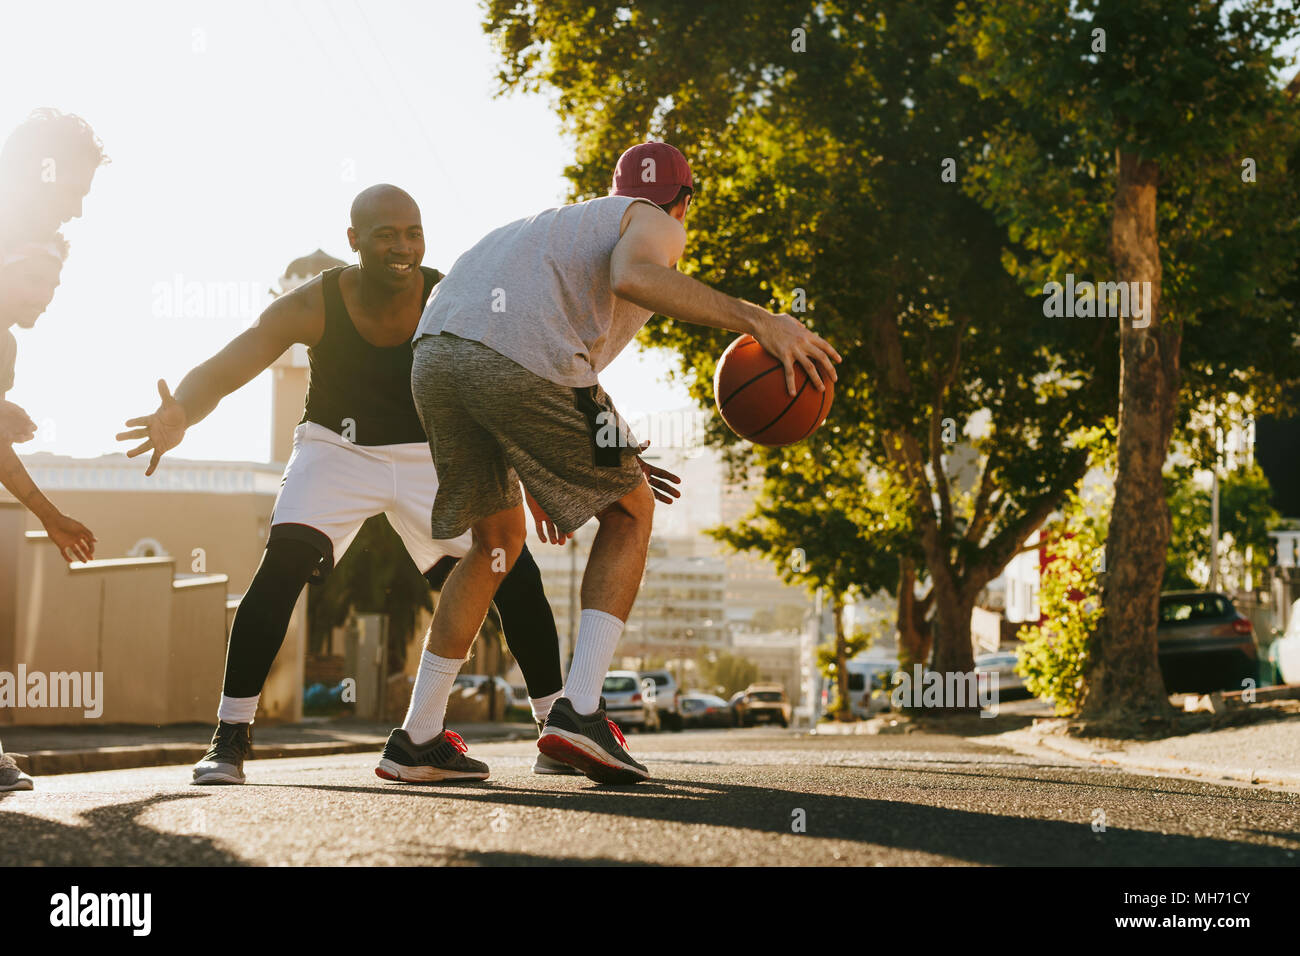 Männer spielen Basketball Spiel an einem sonnigen Tag auf einer leeren Straße. Vier Männer Basketball spielen auf der Straße. Stockfoto